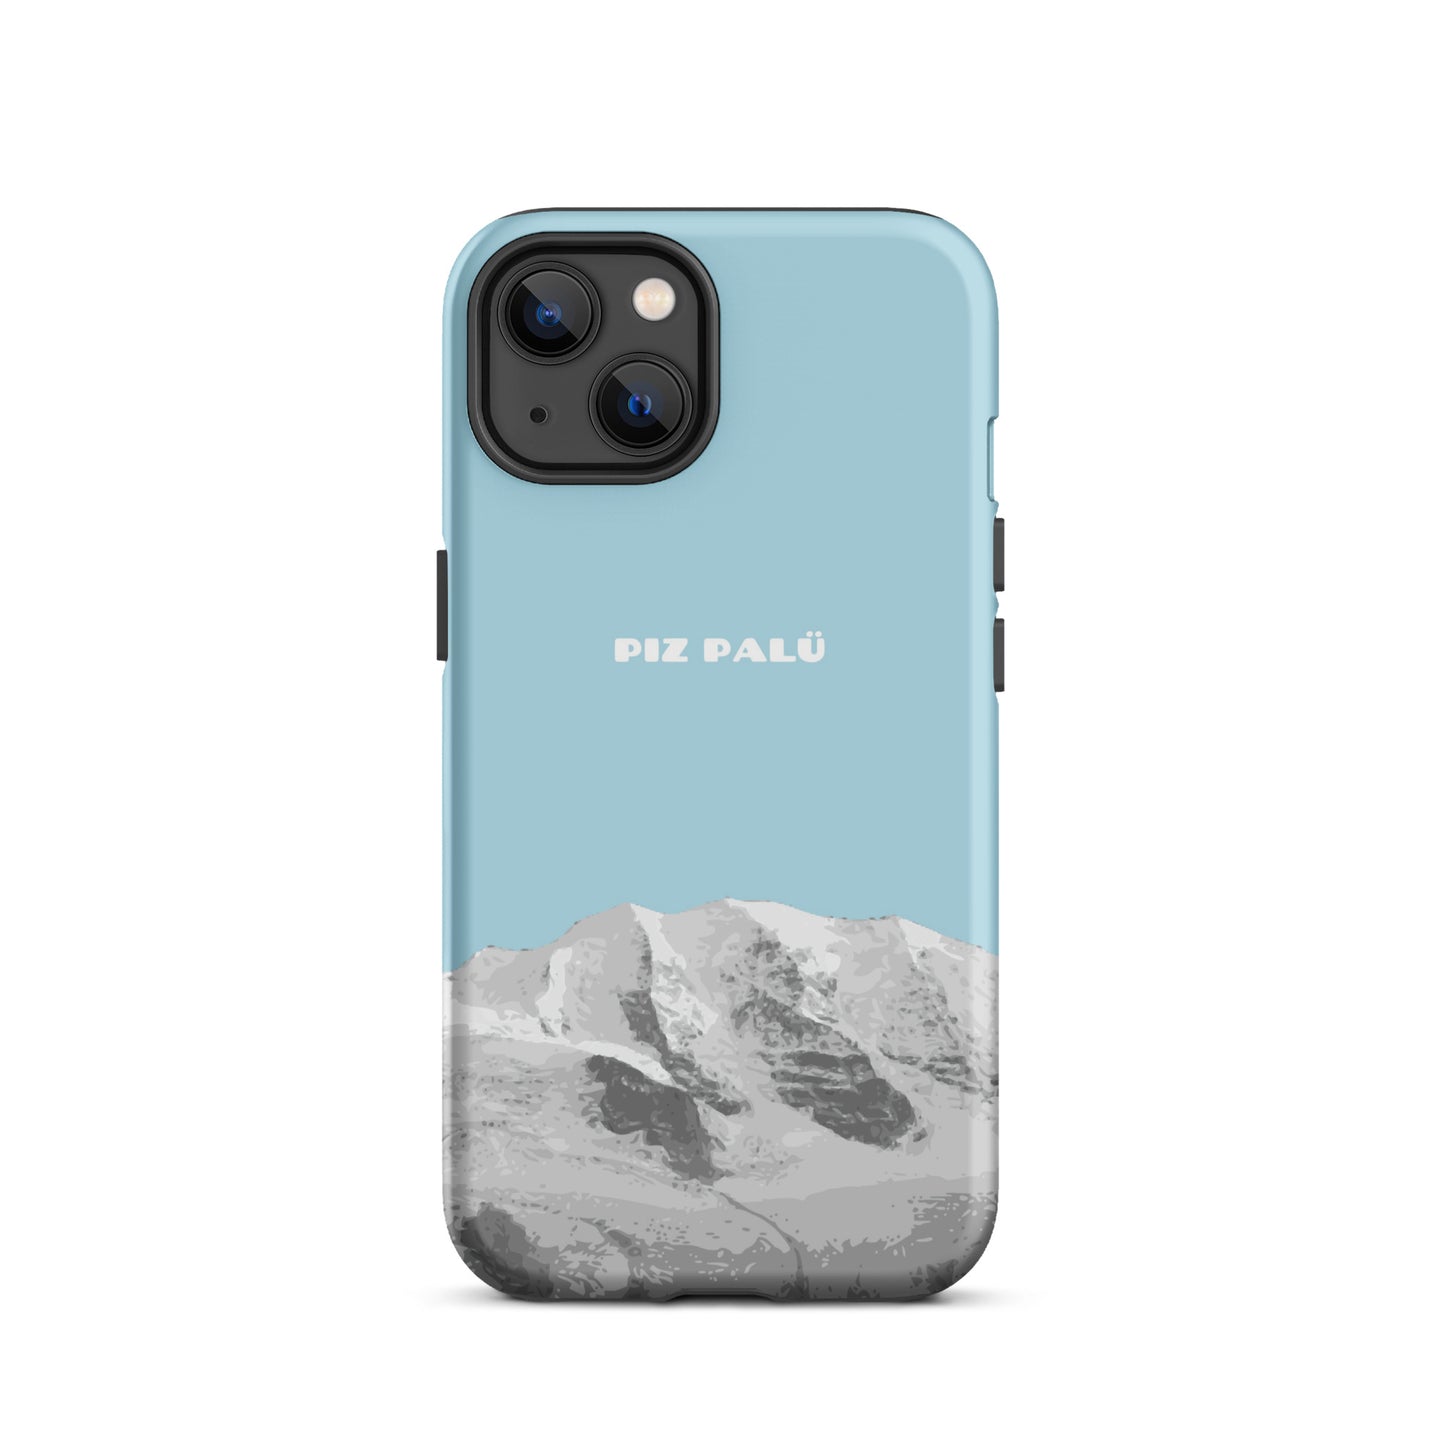 Hülle für das iPhone 13 von Apple in der Farbe Hellblau, dass den Piz Palü in Graubünden zeigt.